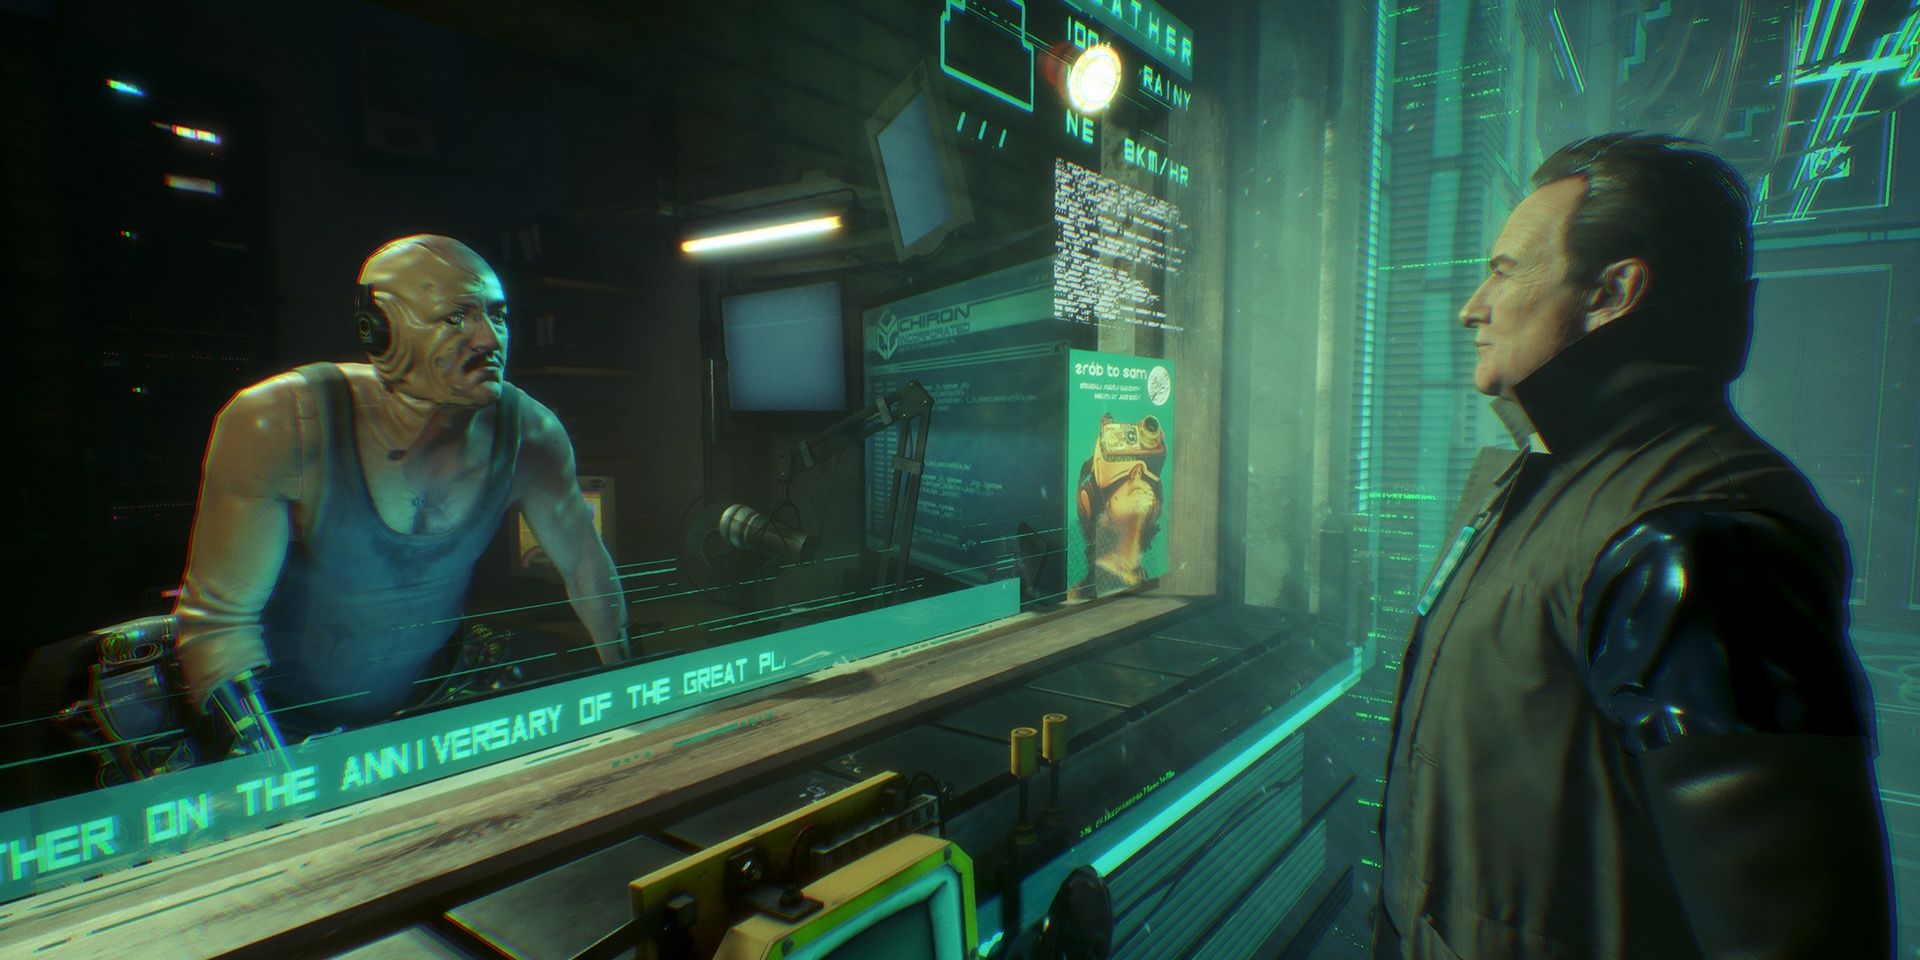 Deux hommes dans un environnement futuriste dans le jeu vidéo Observer